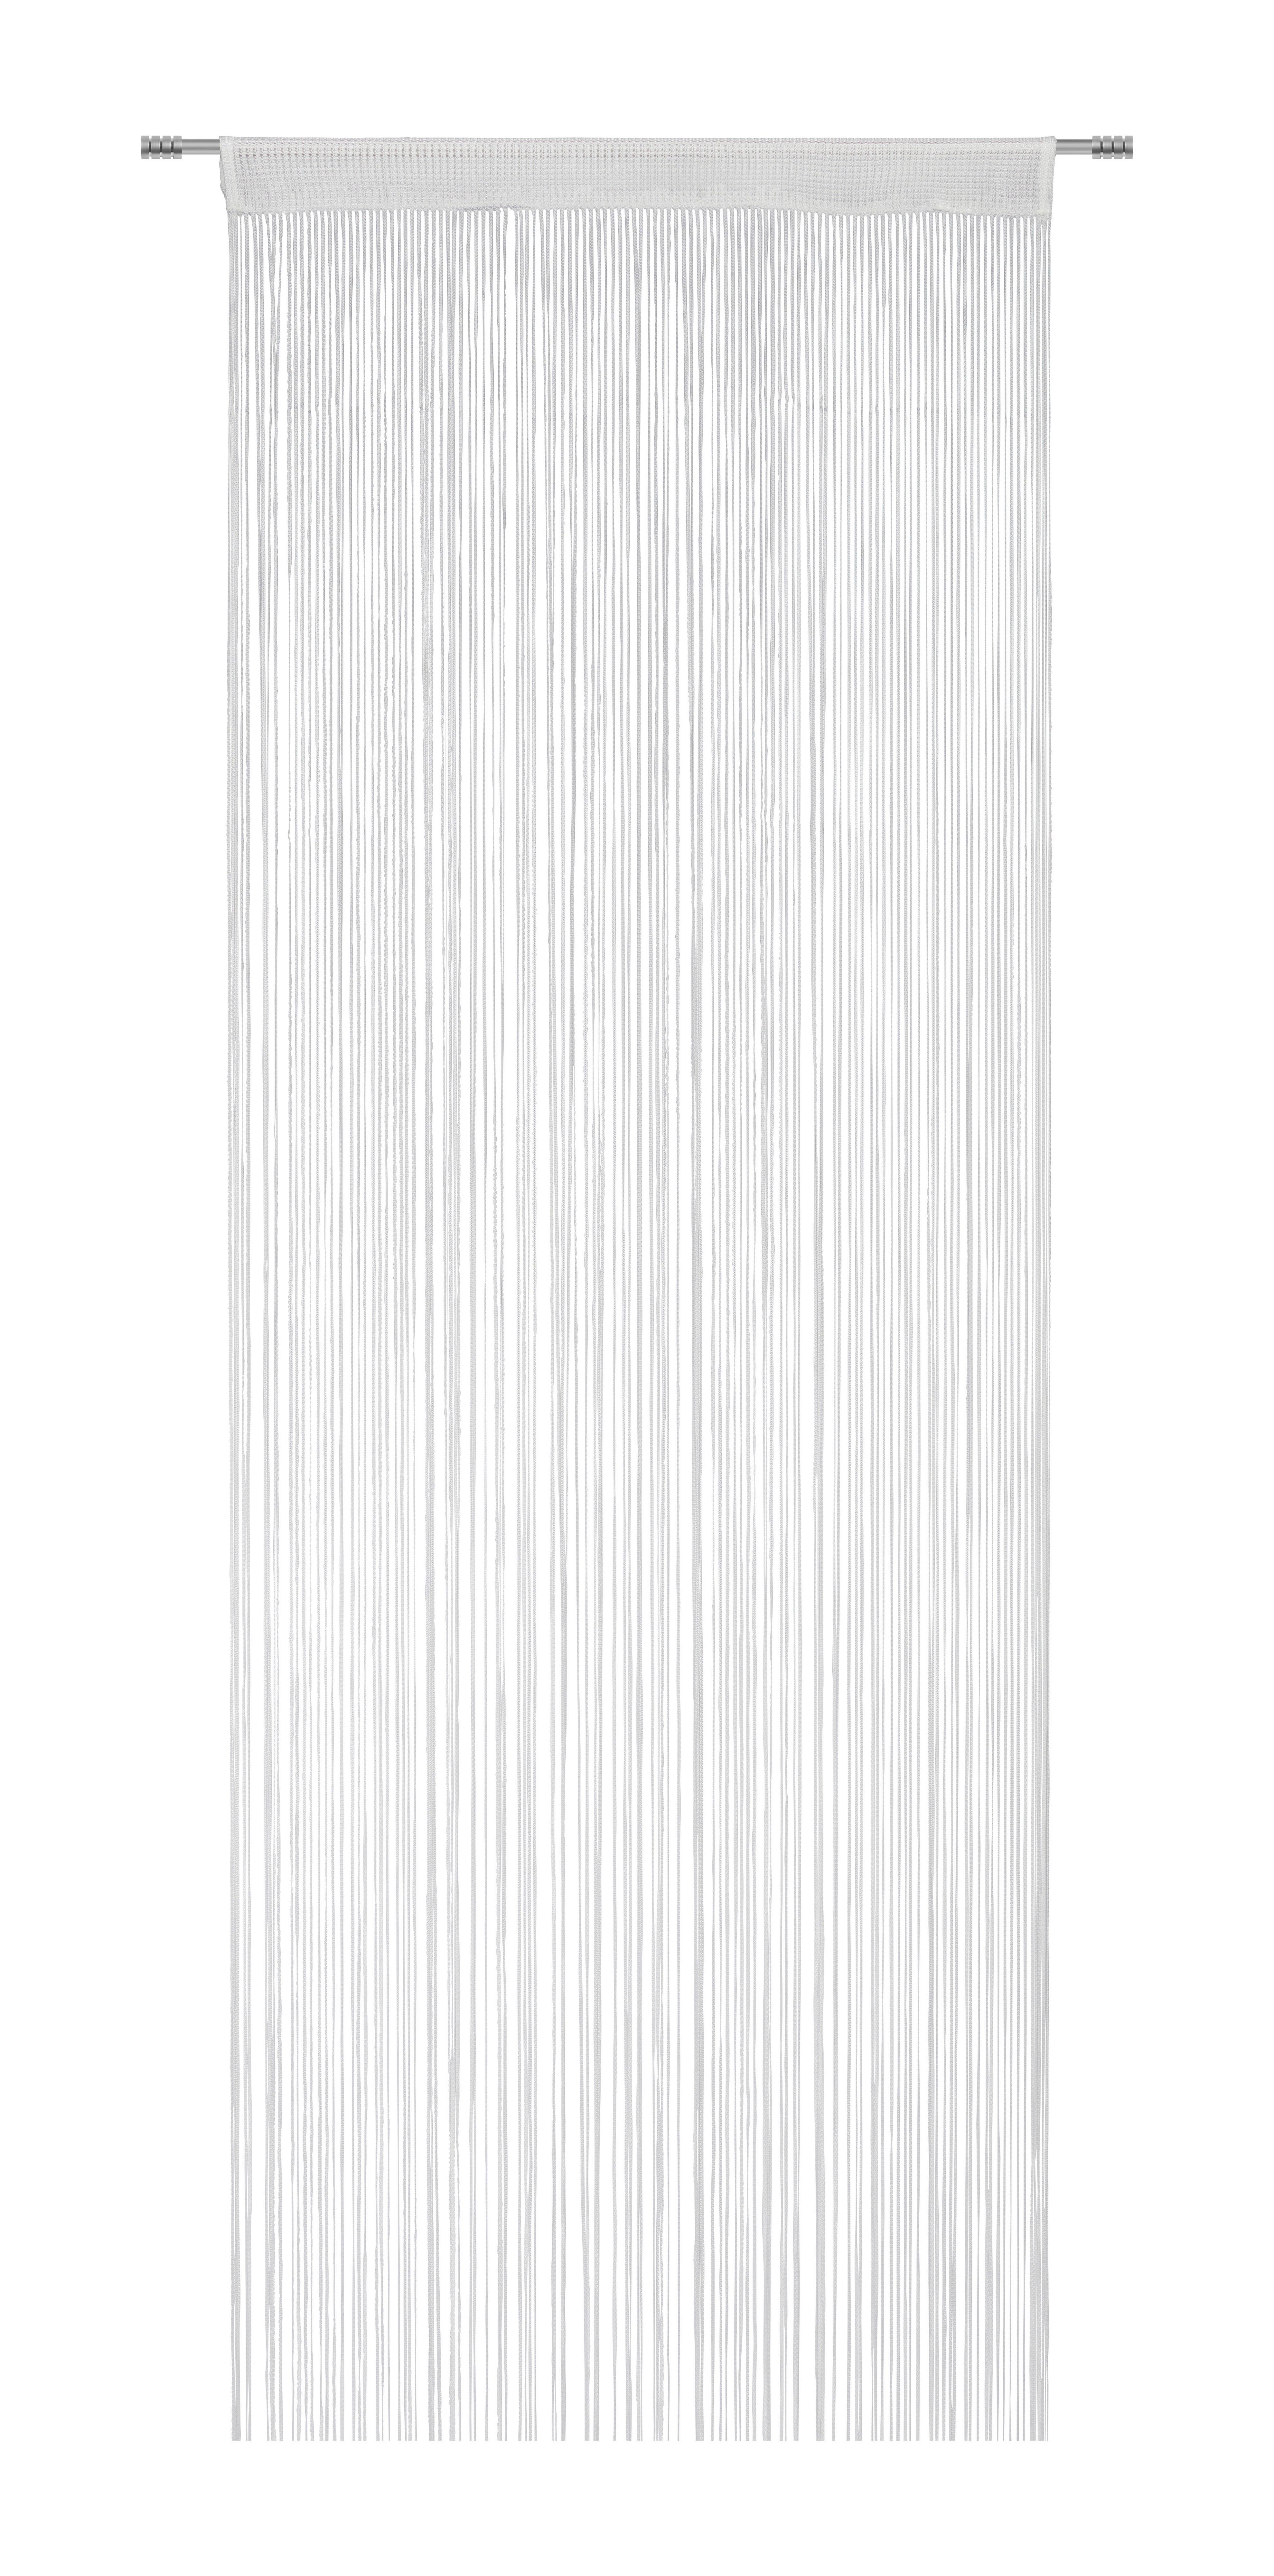 Provázkový Závěs String Uni, 90/250cm, Bílá - bílá, textil (90/250cm) - Premium Living